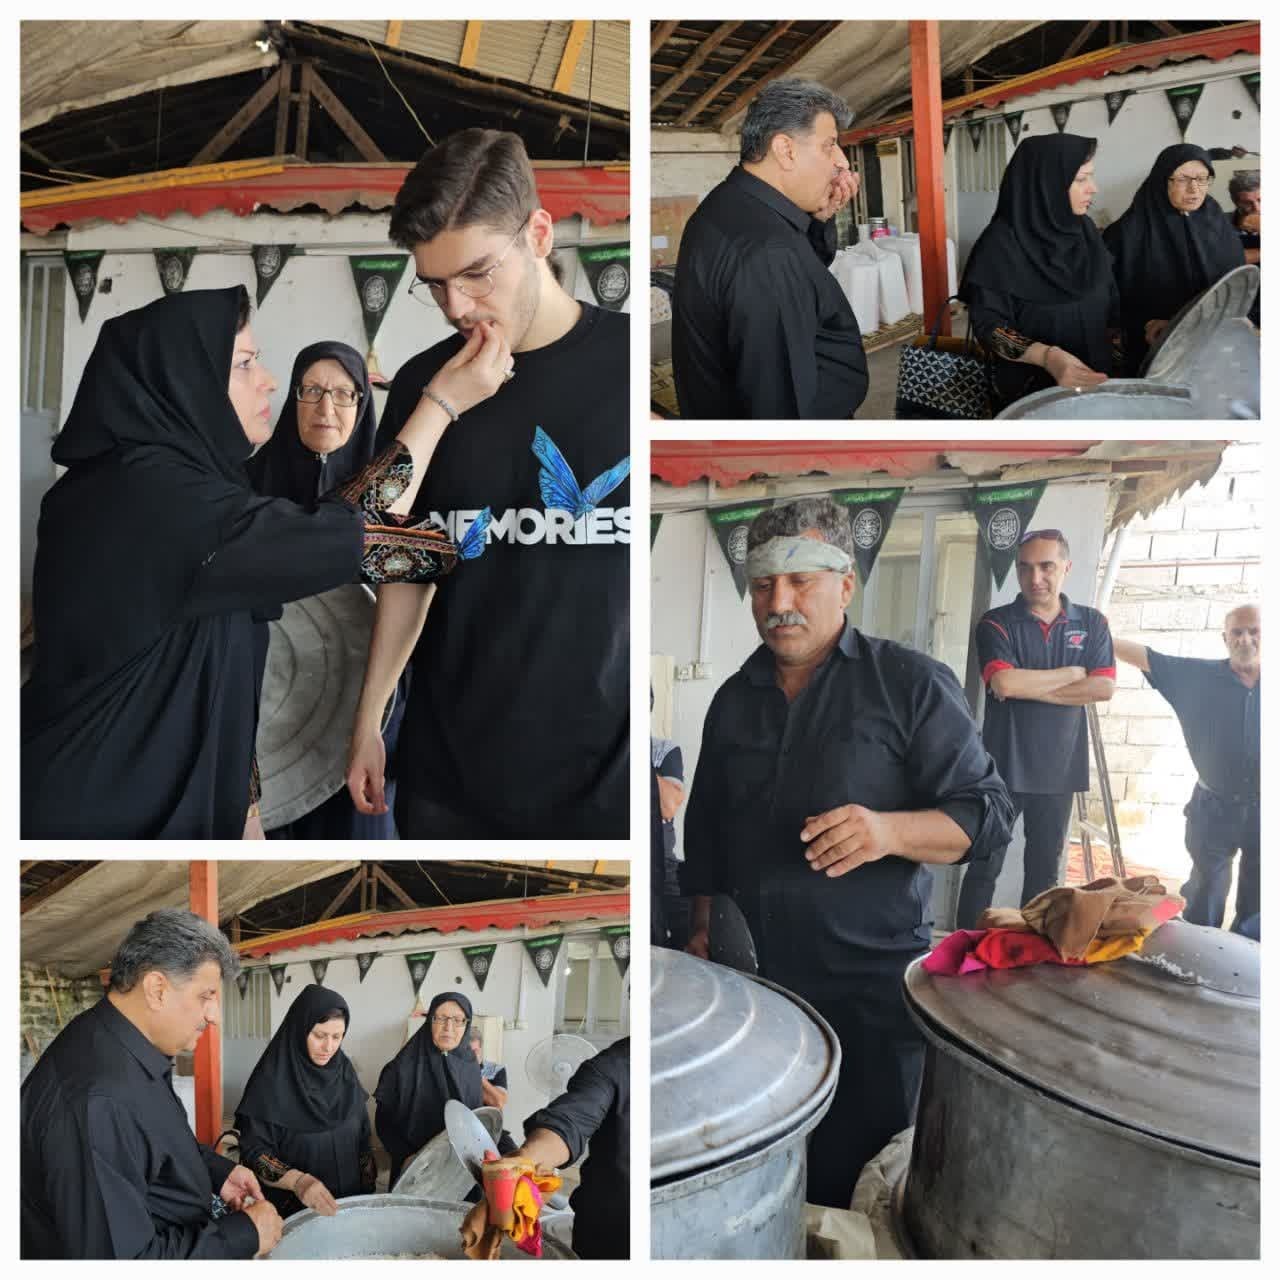 گزارش تصویری از مراسم اطعام دهی روزعاشورا حسینی توسط ترمینال مسافربری منوچهرمهدی پور واقع در میدان شهید املاکی لنگرود